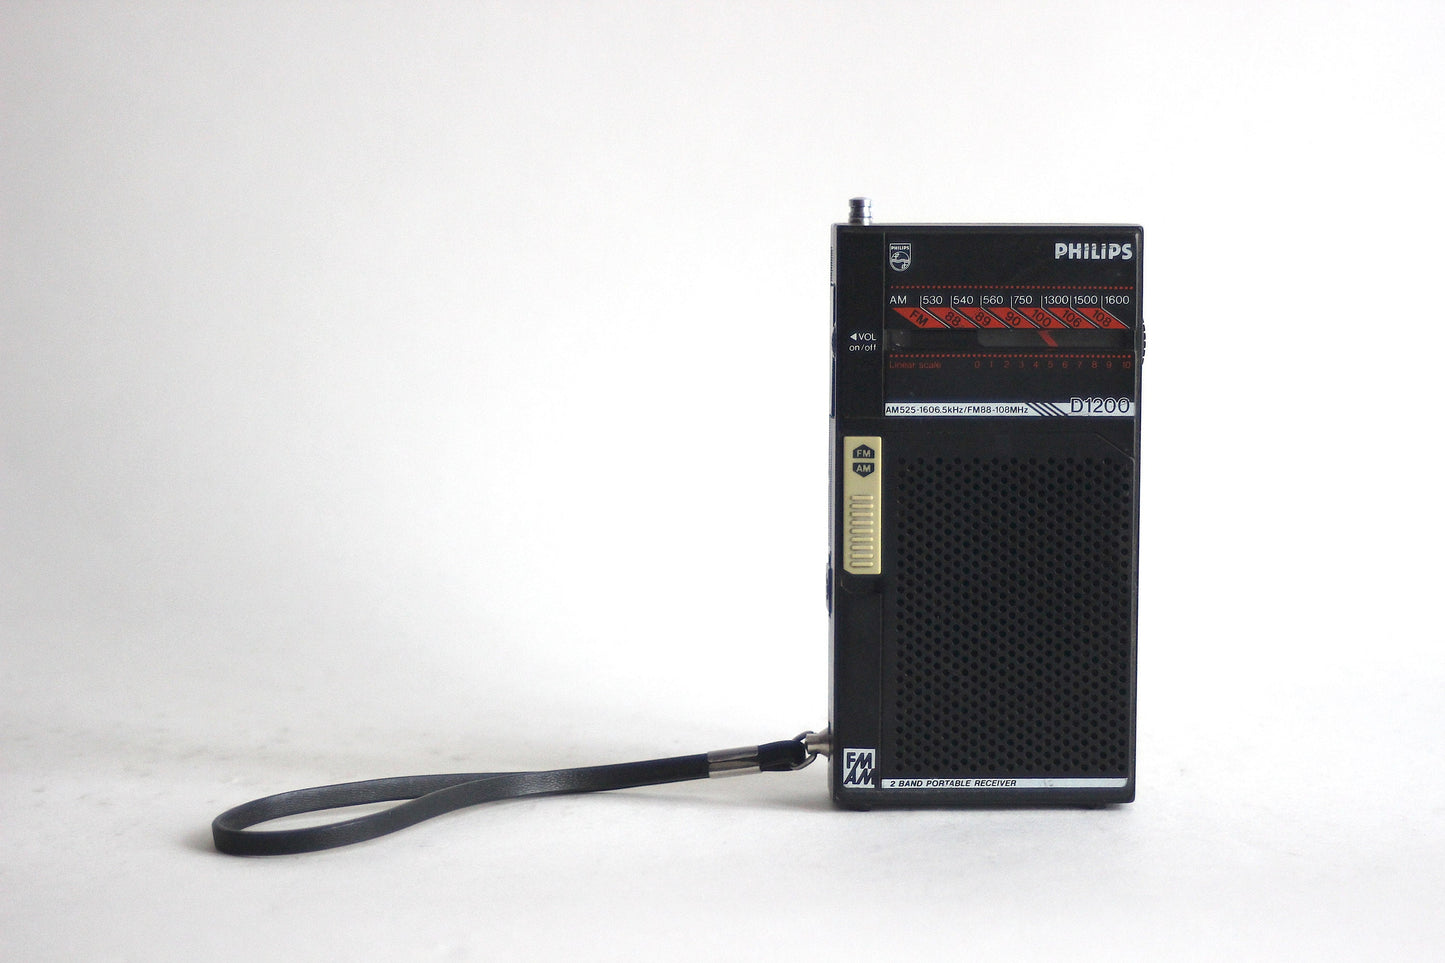 PHILIPS D1200 Pocket Radio. Hong Kong 1985.